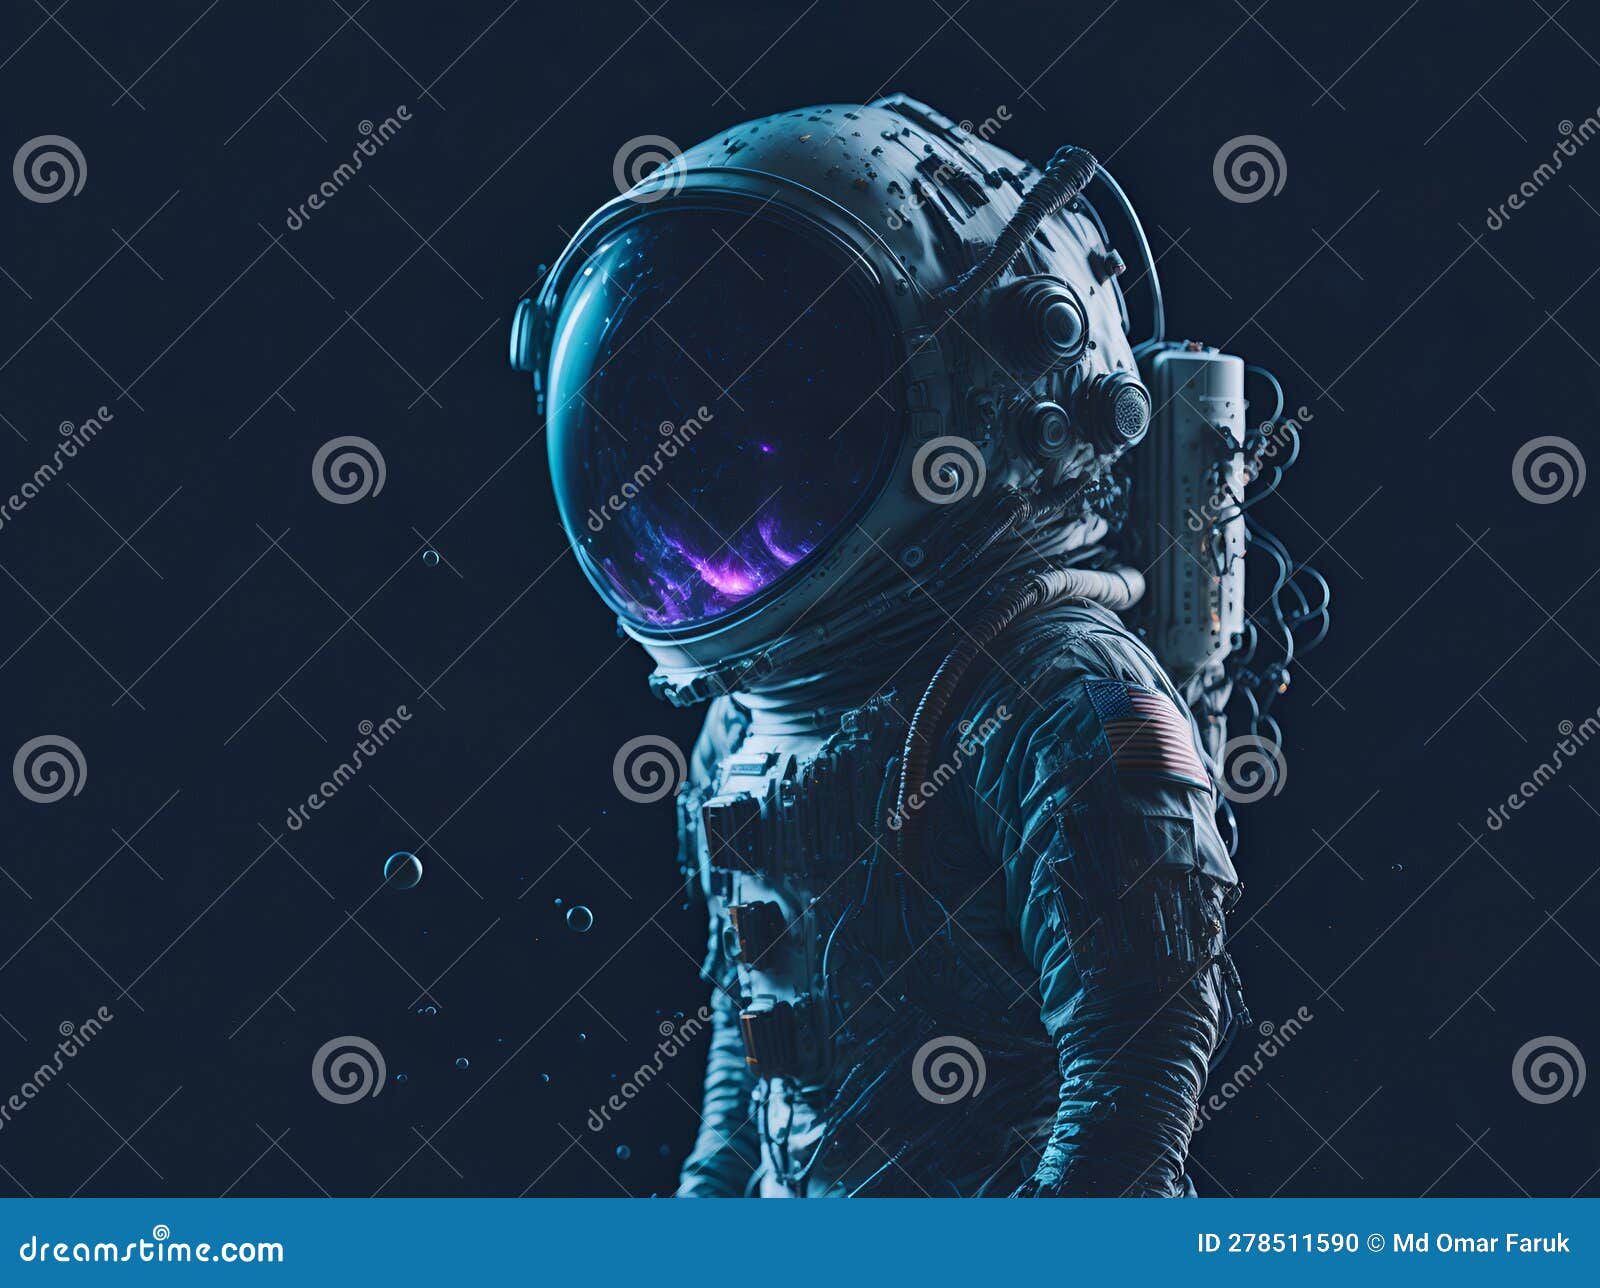 an astronautâs dream of the galaxy.